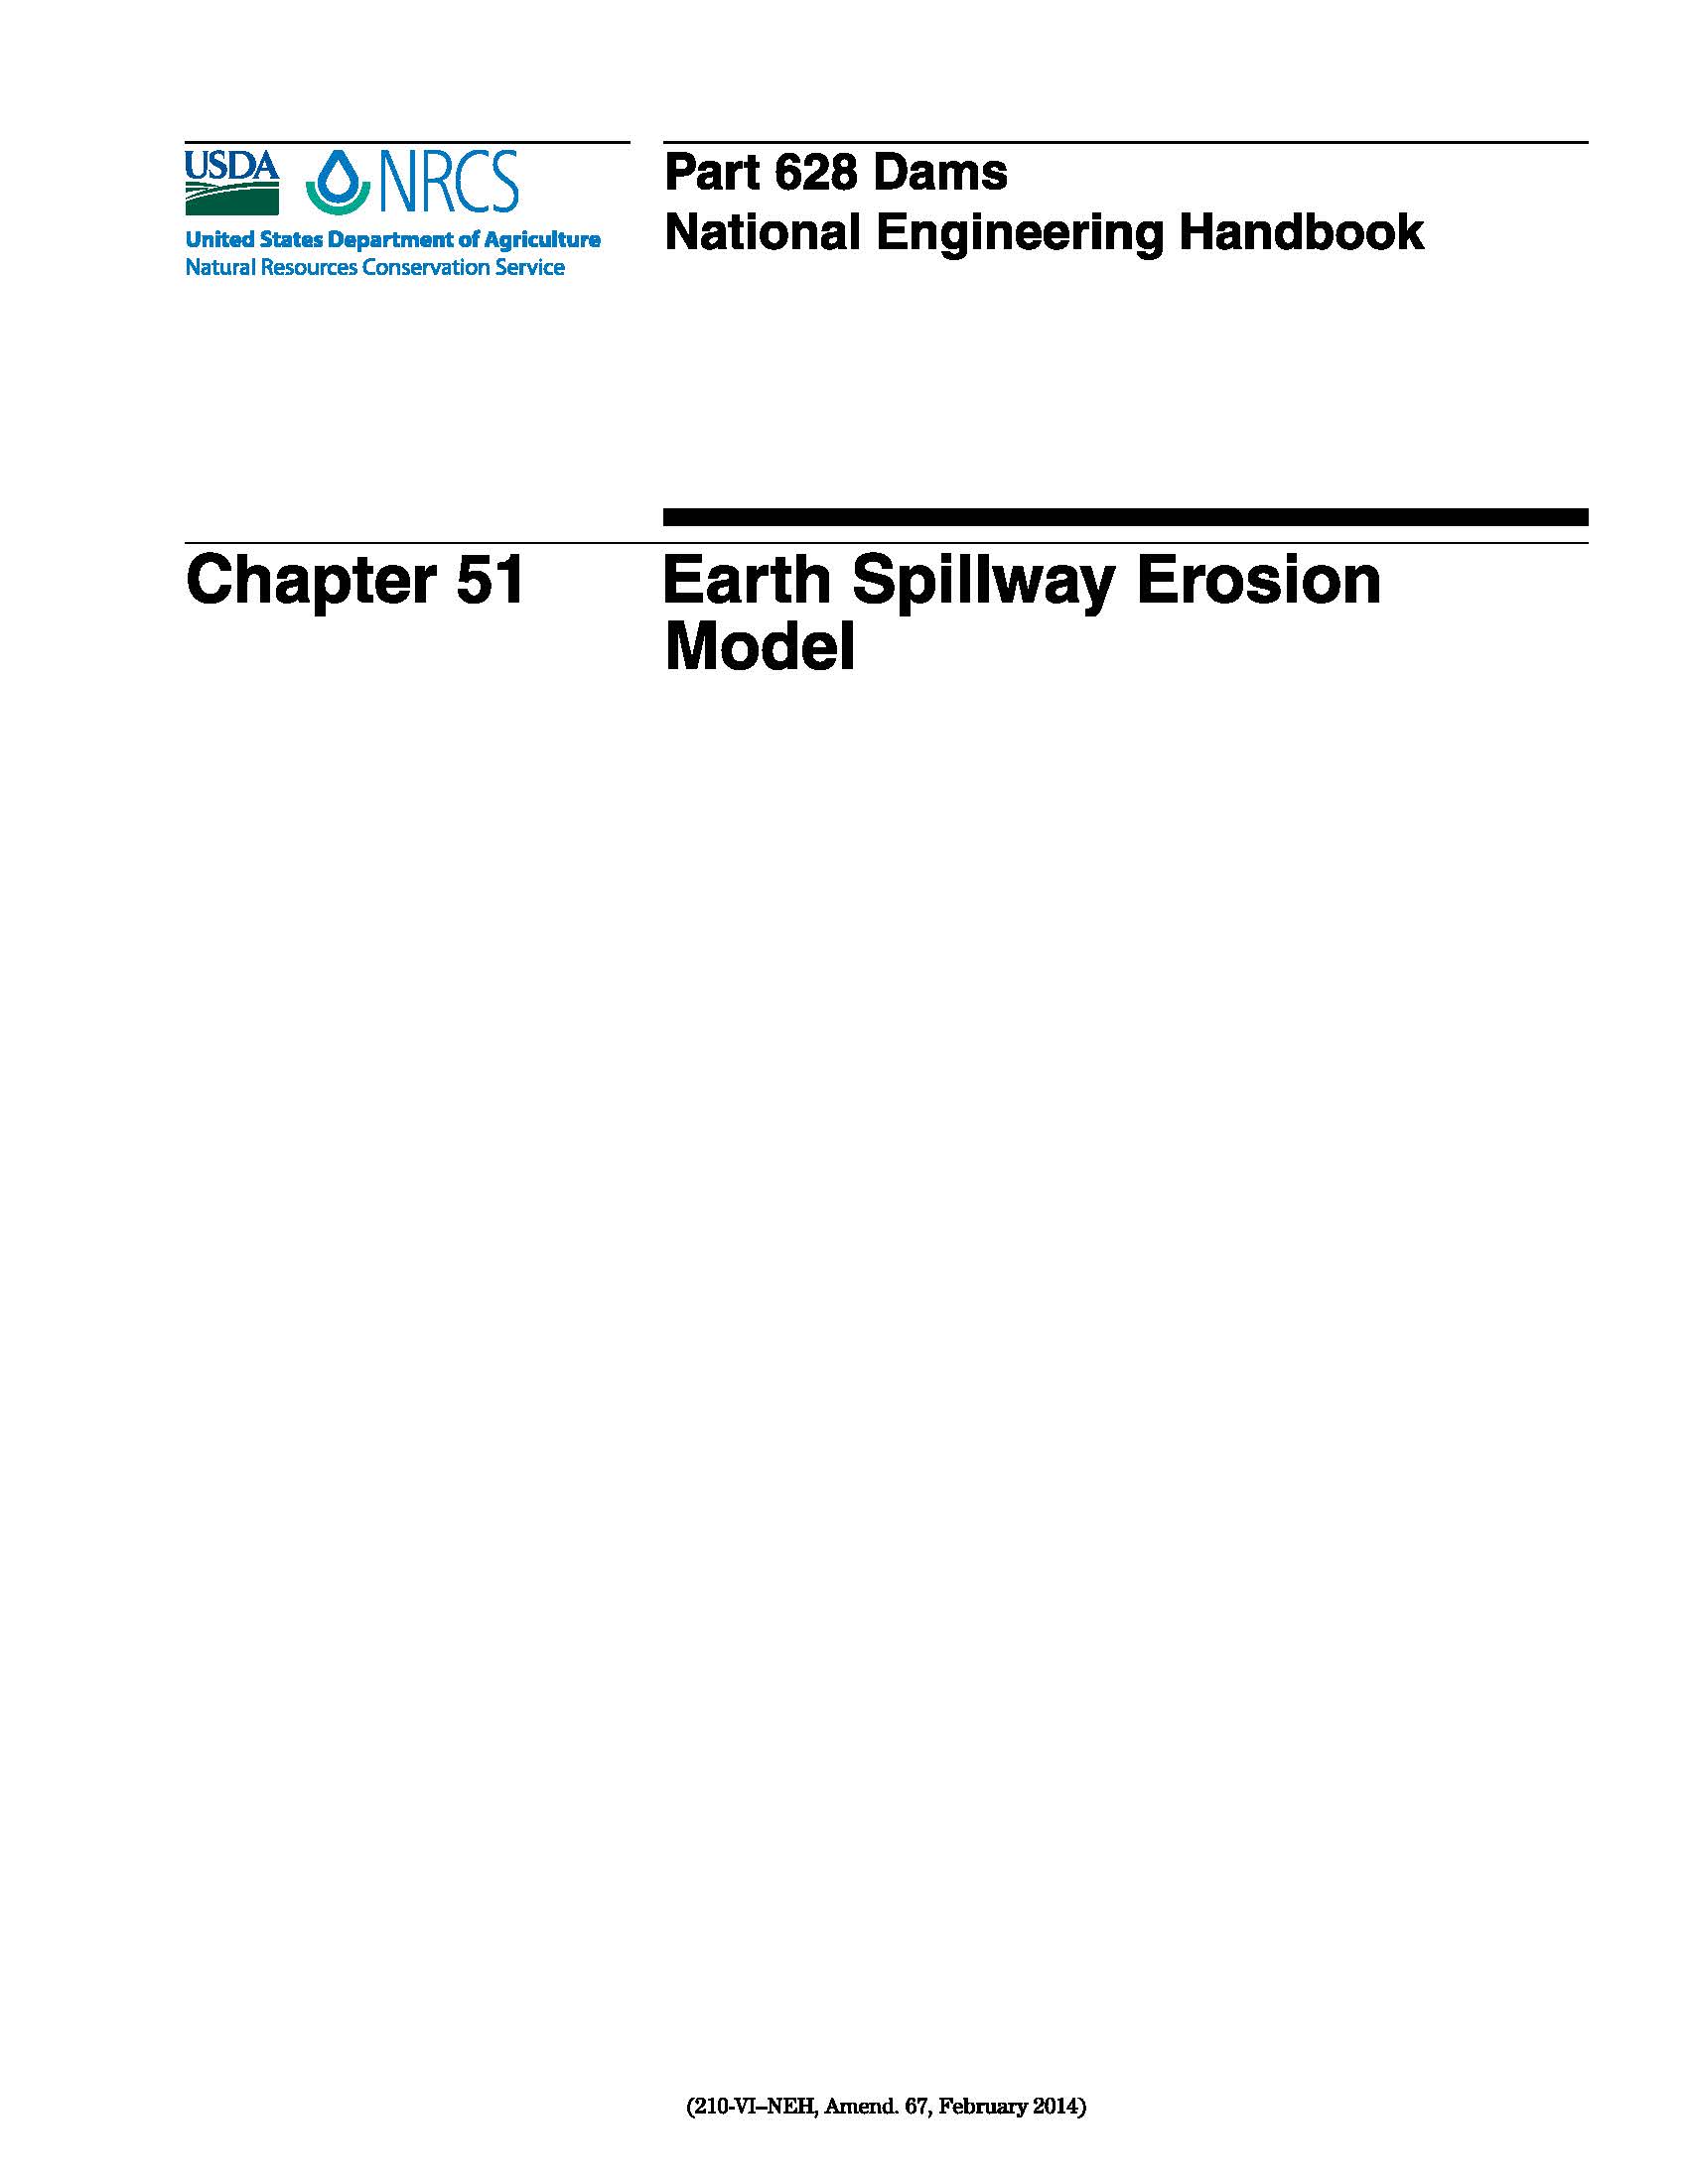 NEH-628-51 Earth Spillway Erosion Model